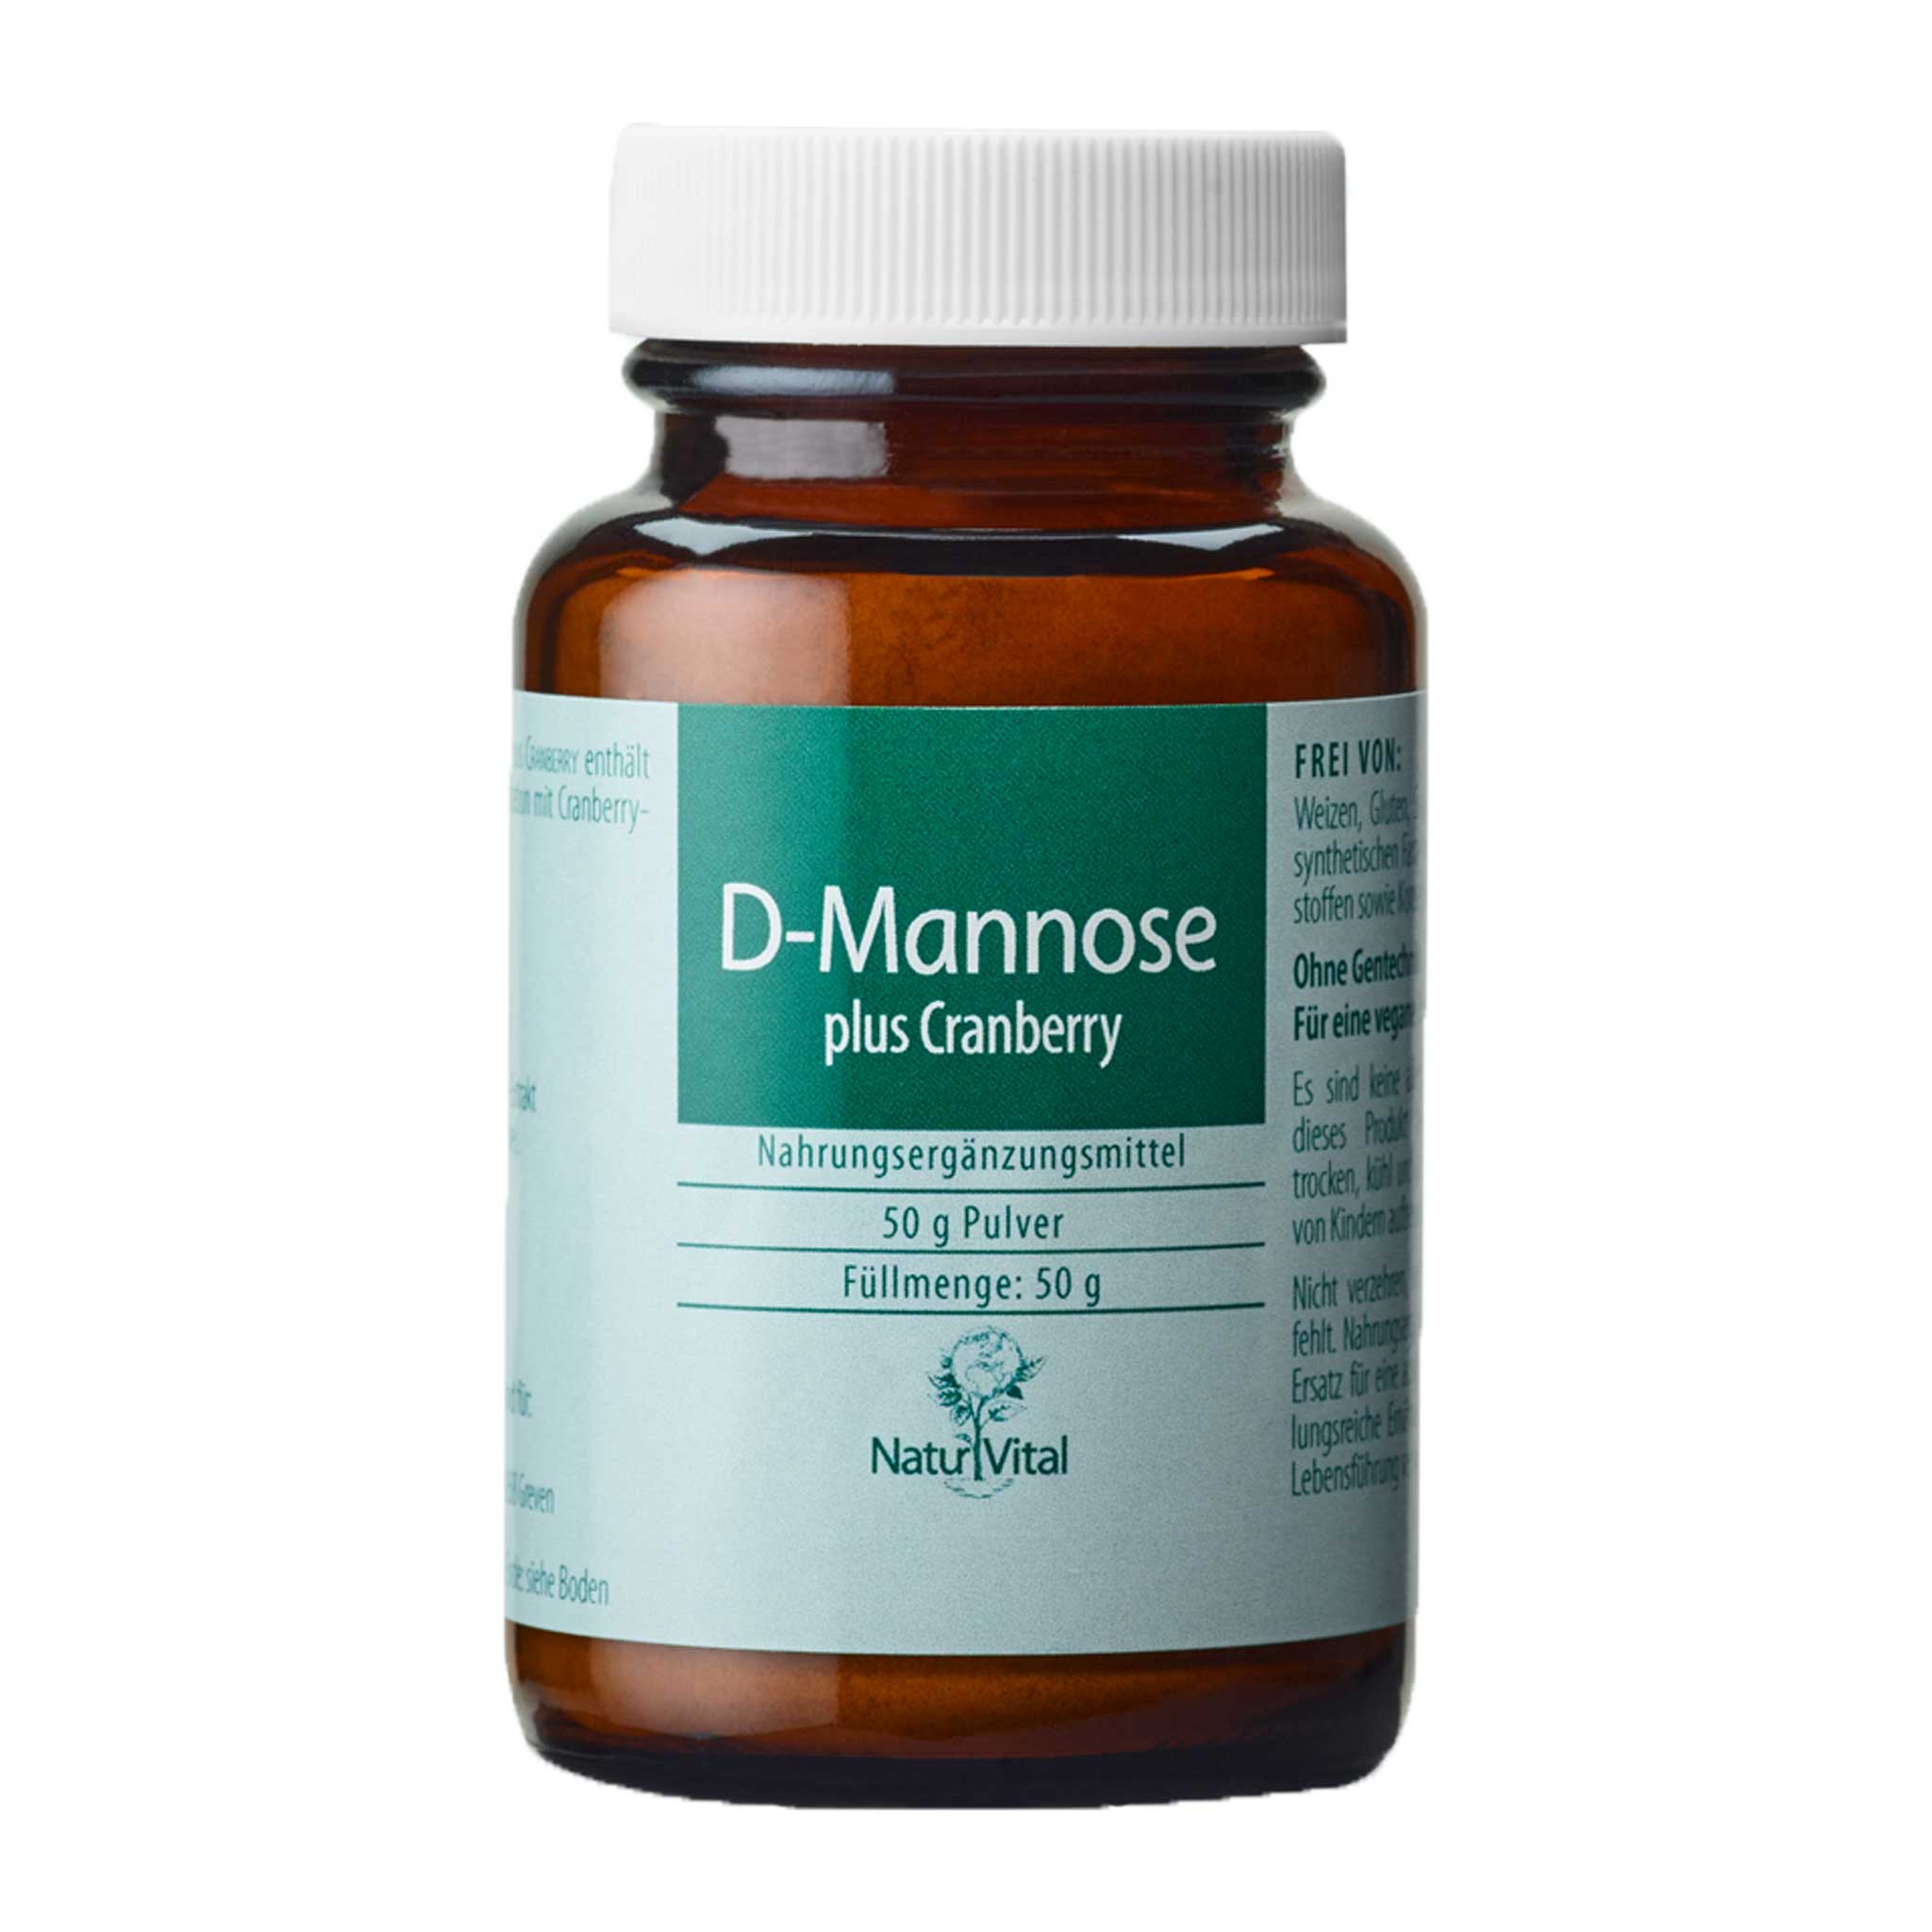 D-Mannose plus Cranberry, 50 g Pulver